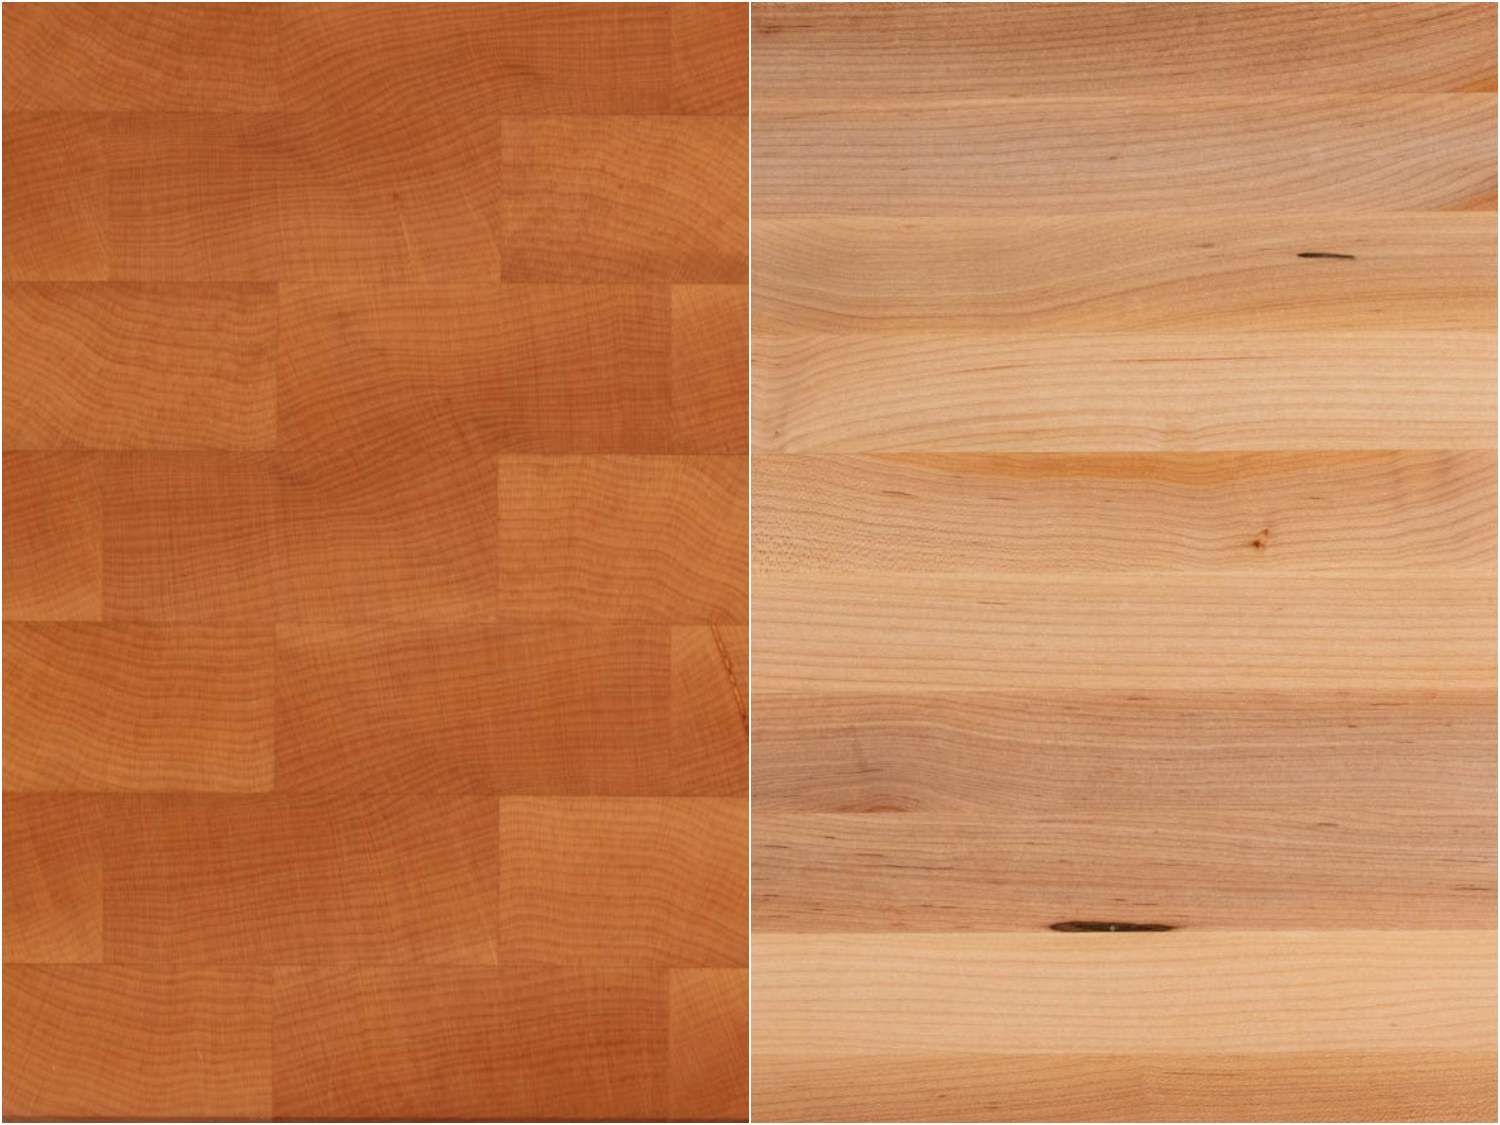 端纹板和边缘纹板的比较:端纹板在切割表面上有树轮可见，而边缘纹板没有。